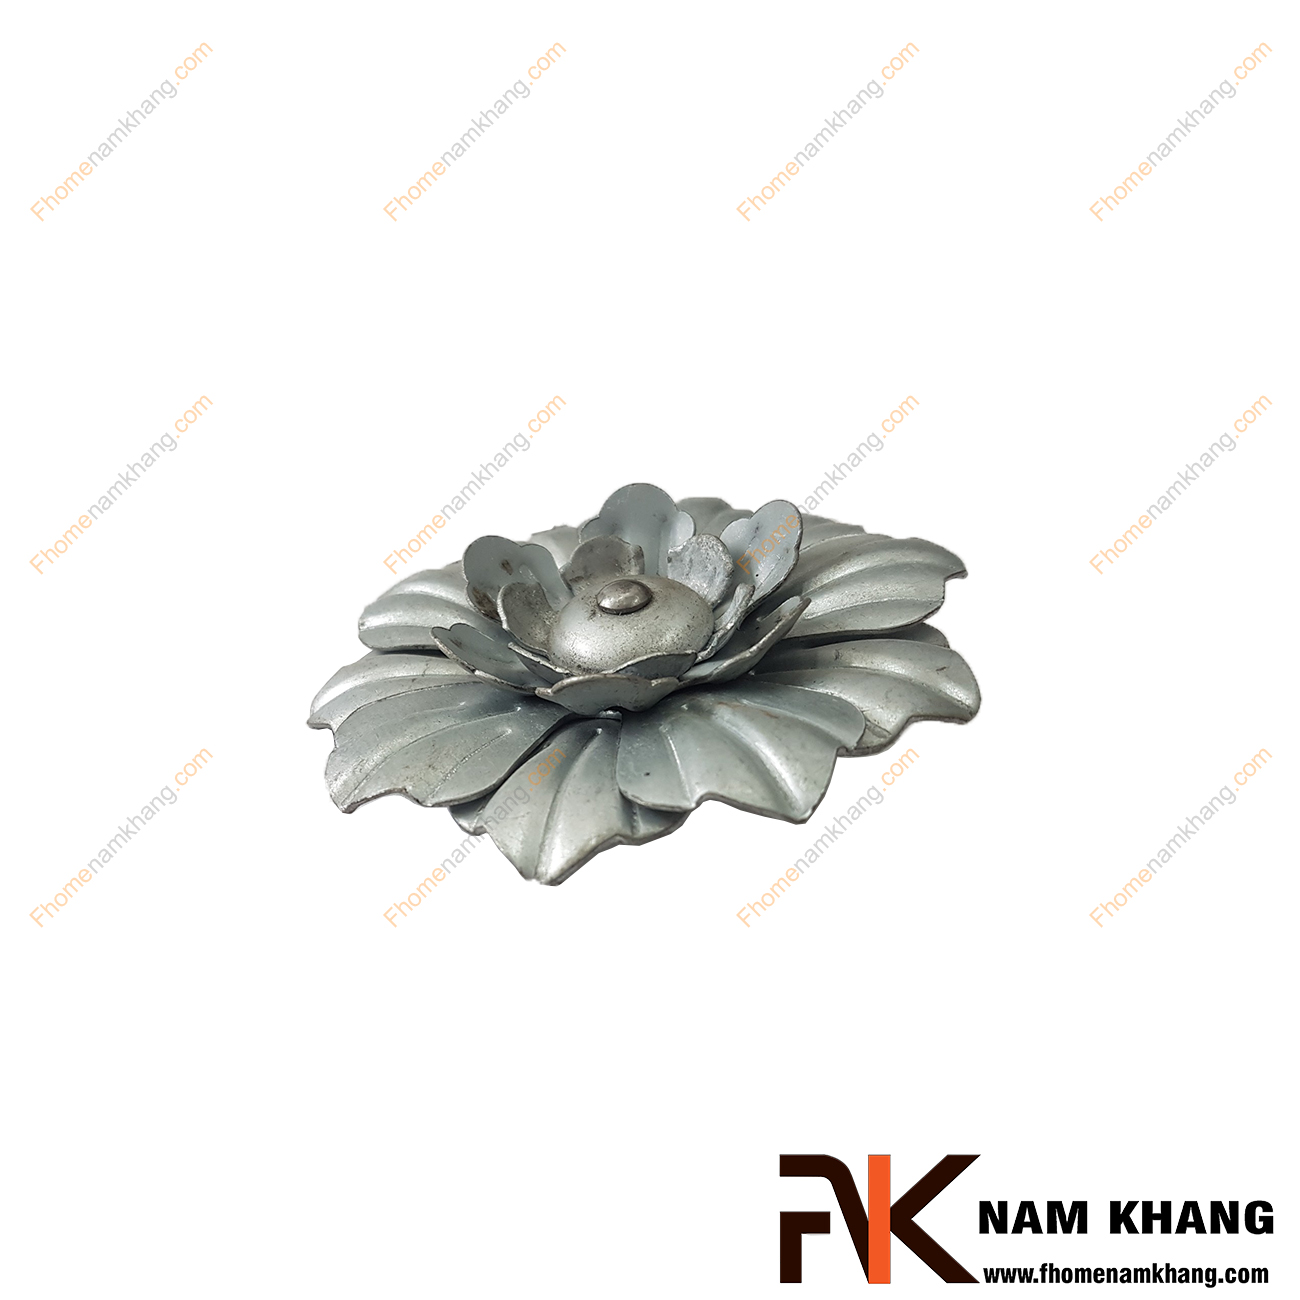 Hoa lá thép dập NKS-123 được tạo hình bông hoa, là phụ kiện trang trí dành cho các sản phẩm sắt uốn mỹ thuật  Chi tiết được dập nỗi trên bề mặt, mô phỏng chính xác chi tiết thực tế.